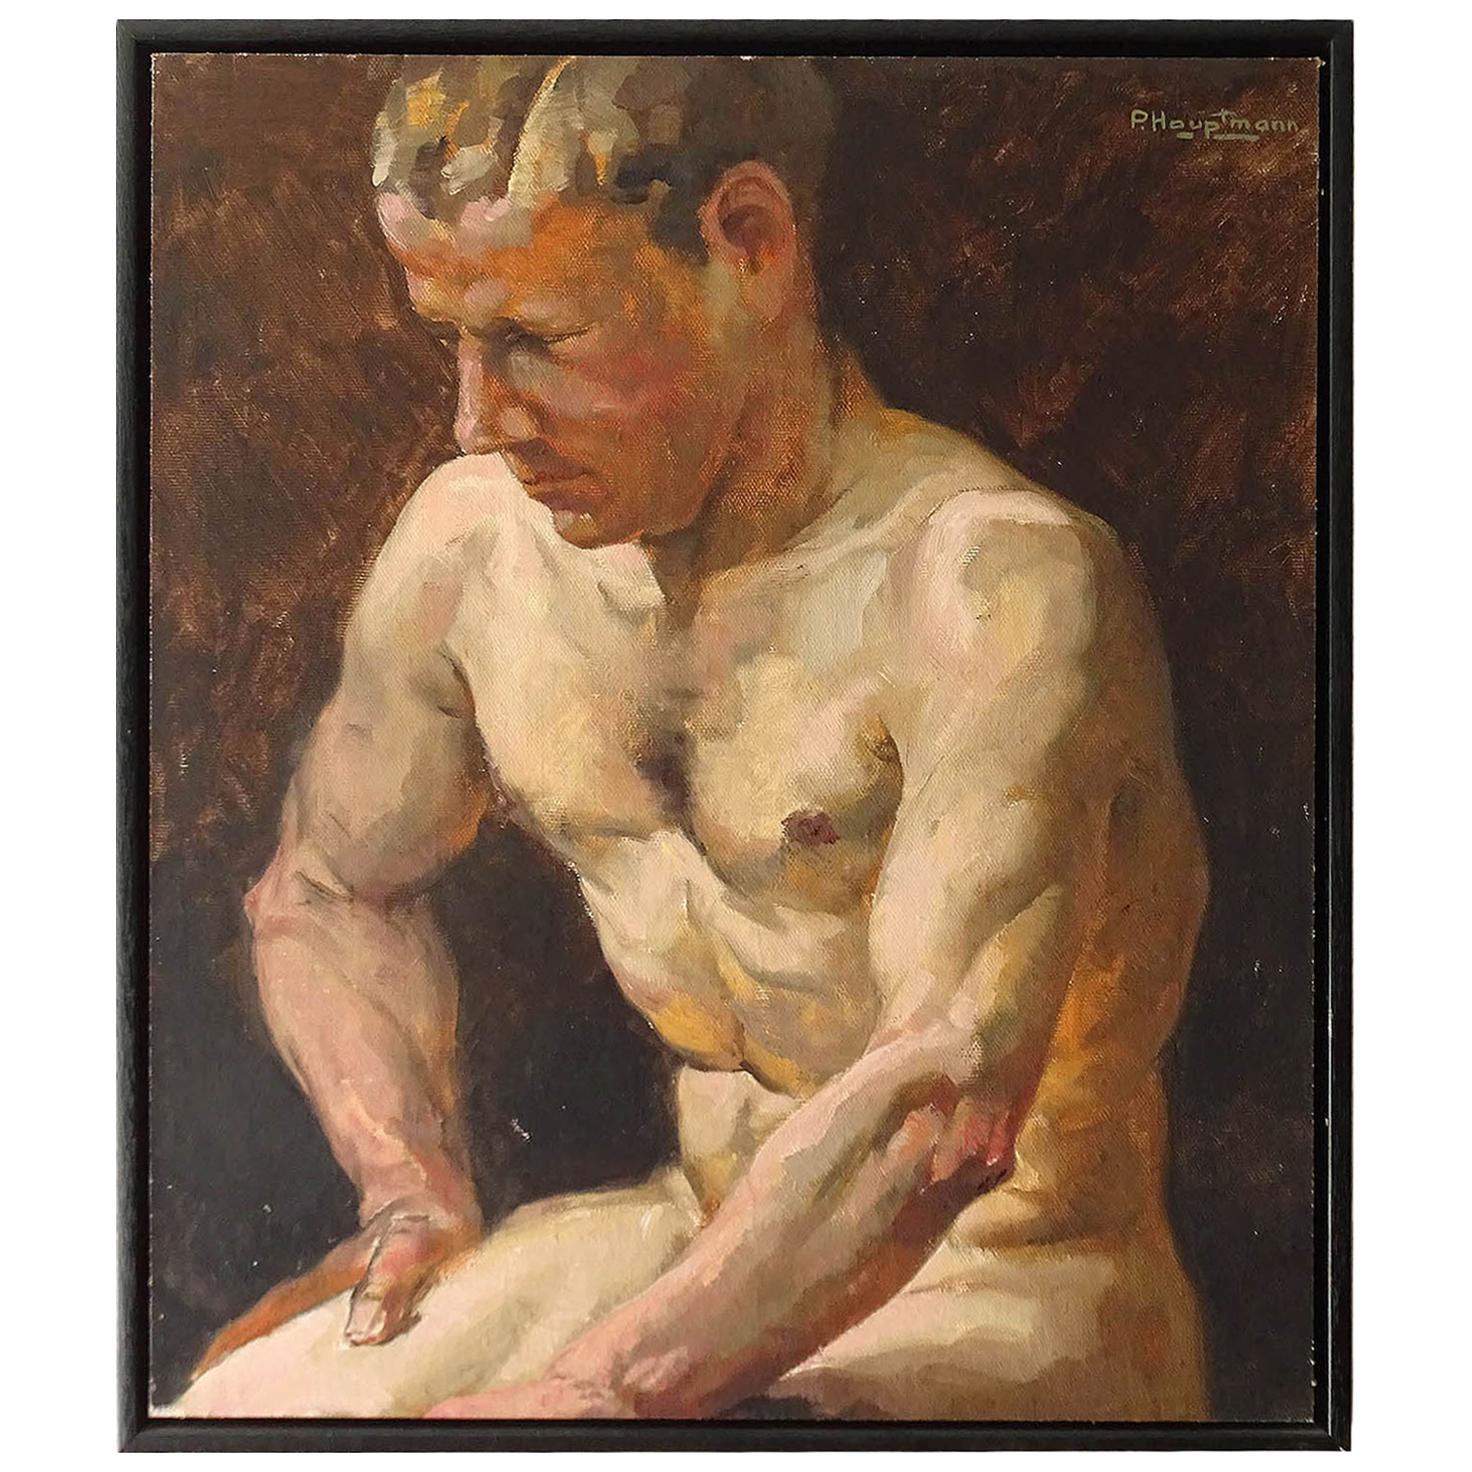 1930s Art Deco Male Men Nude Portrait Study Oil Painting by Paul Adolf Hauptmann